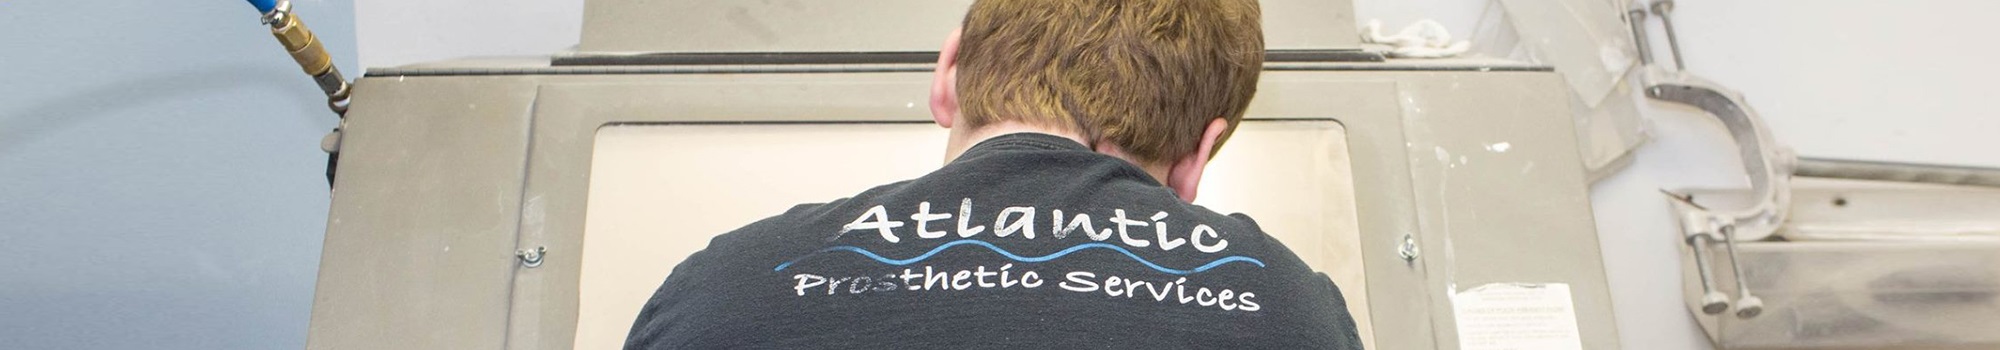 Atlantic Prosthetic Services